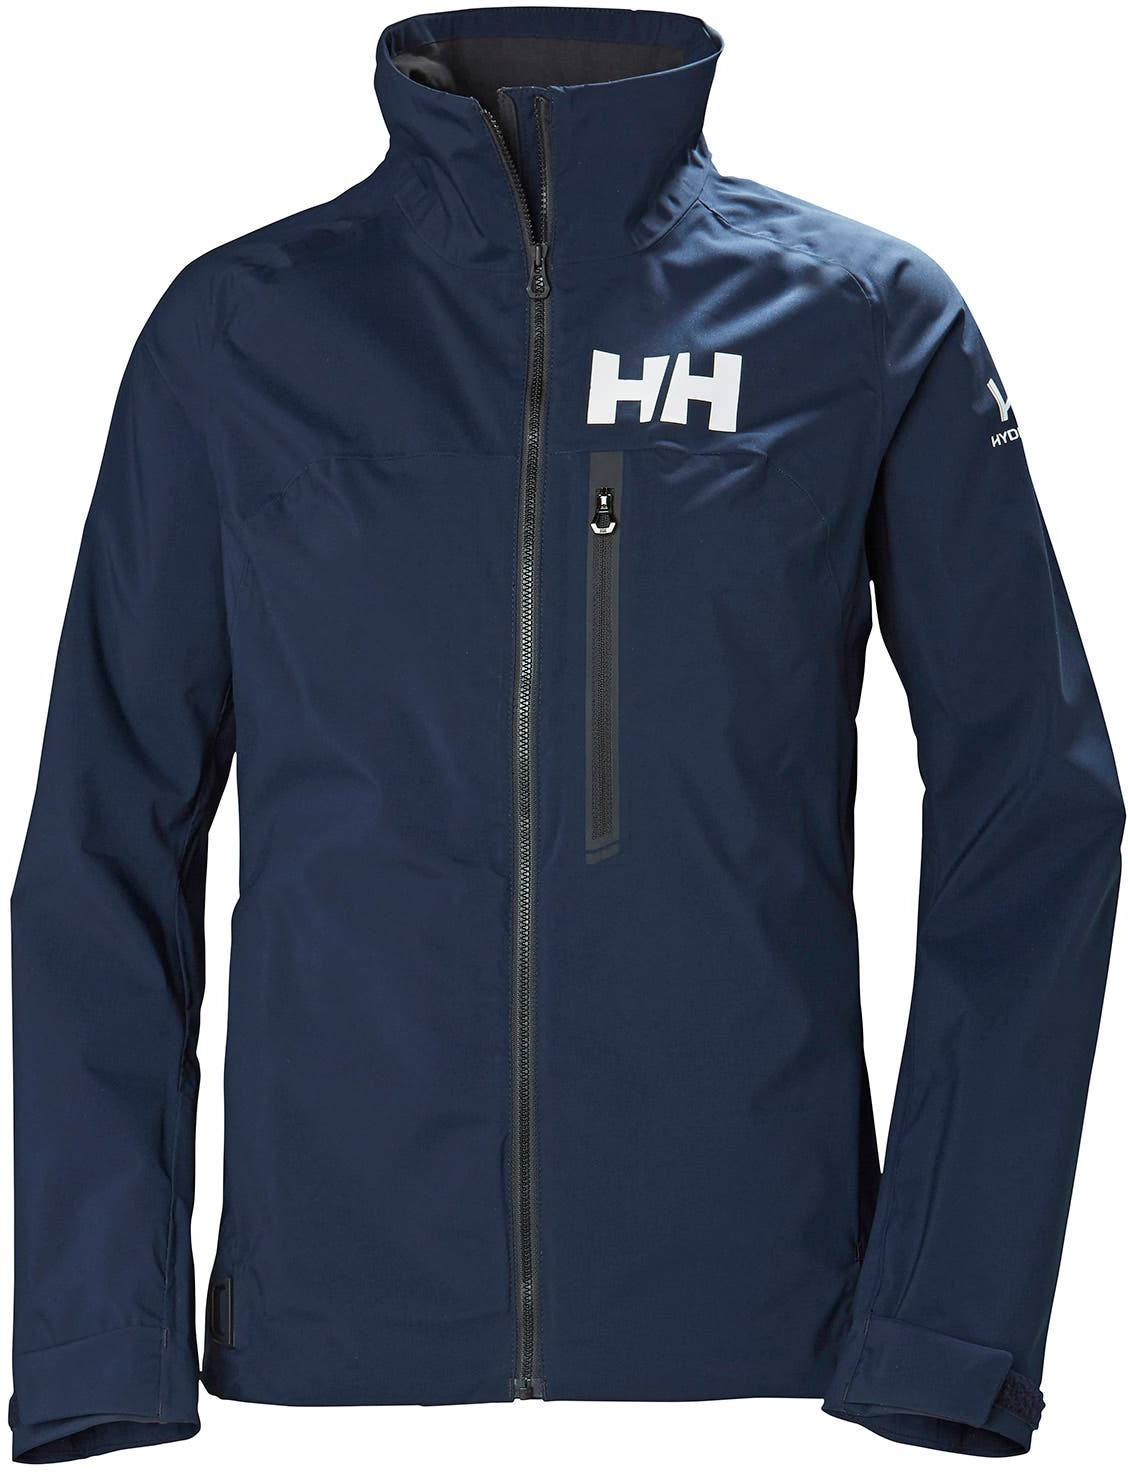 Helly Hansen HP Racing Jacket Women